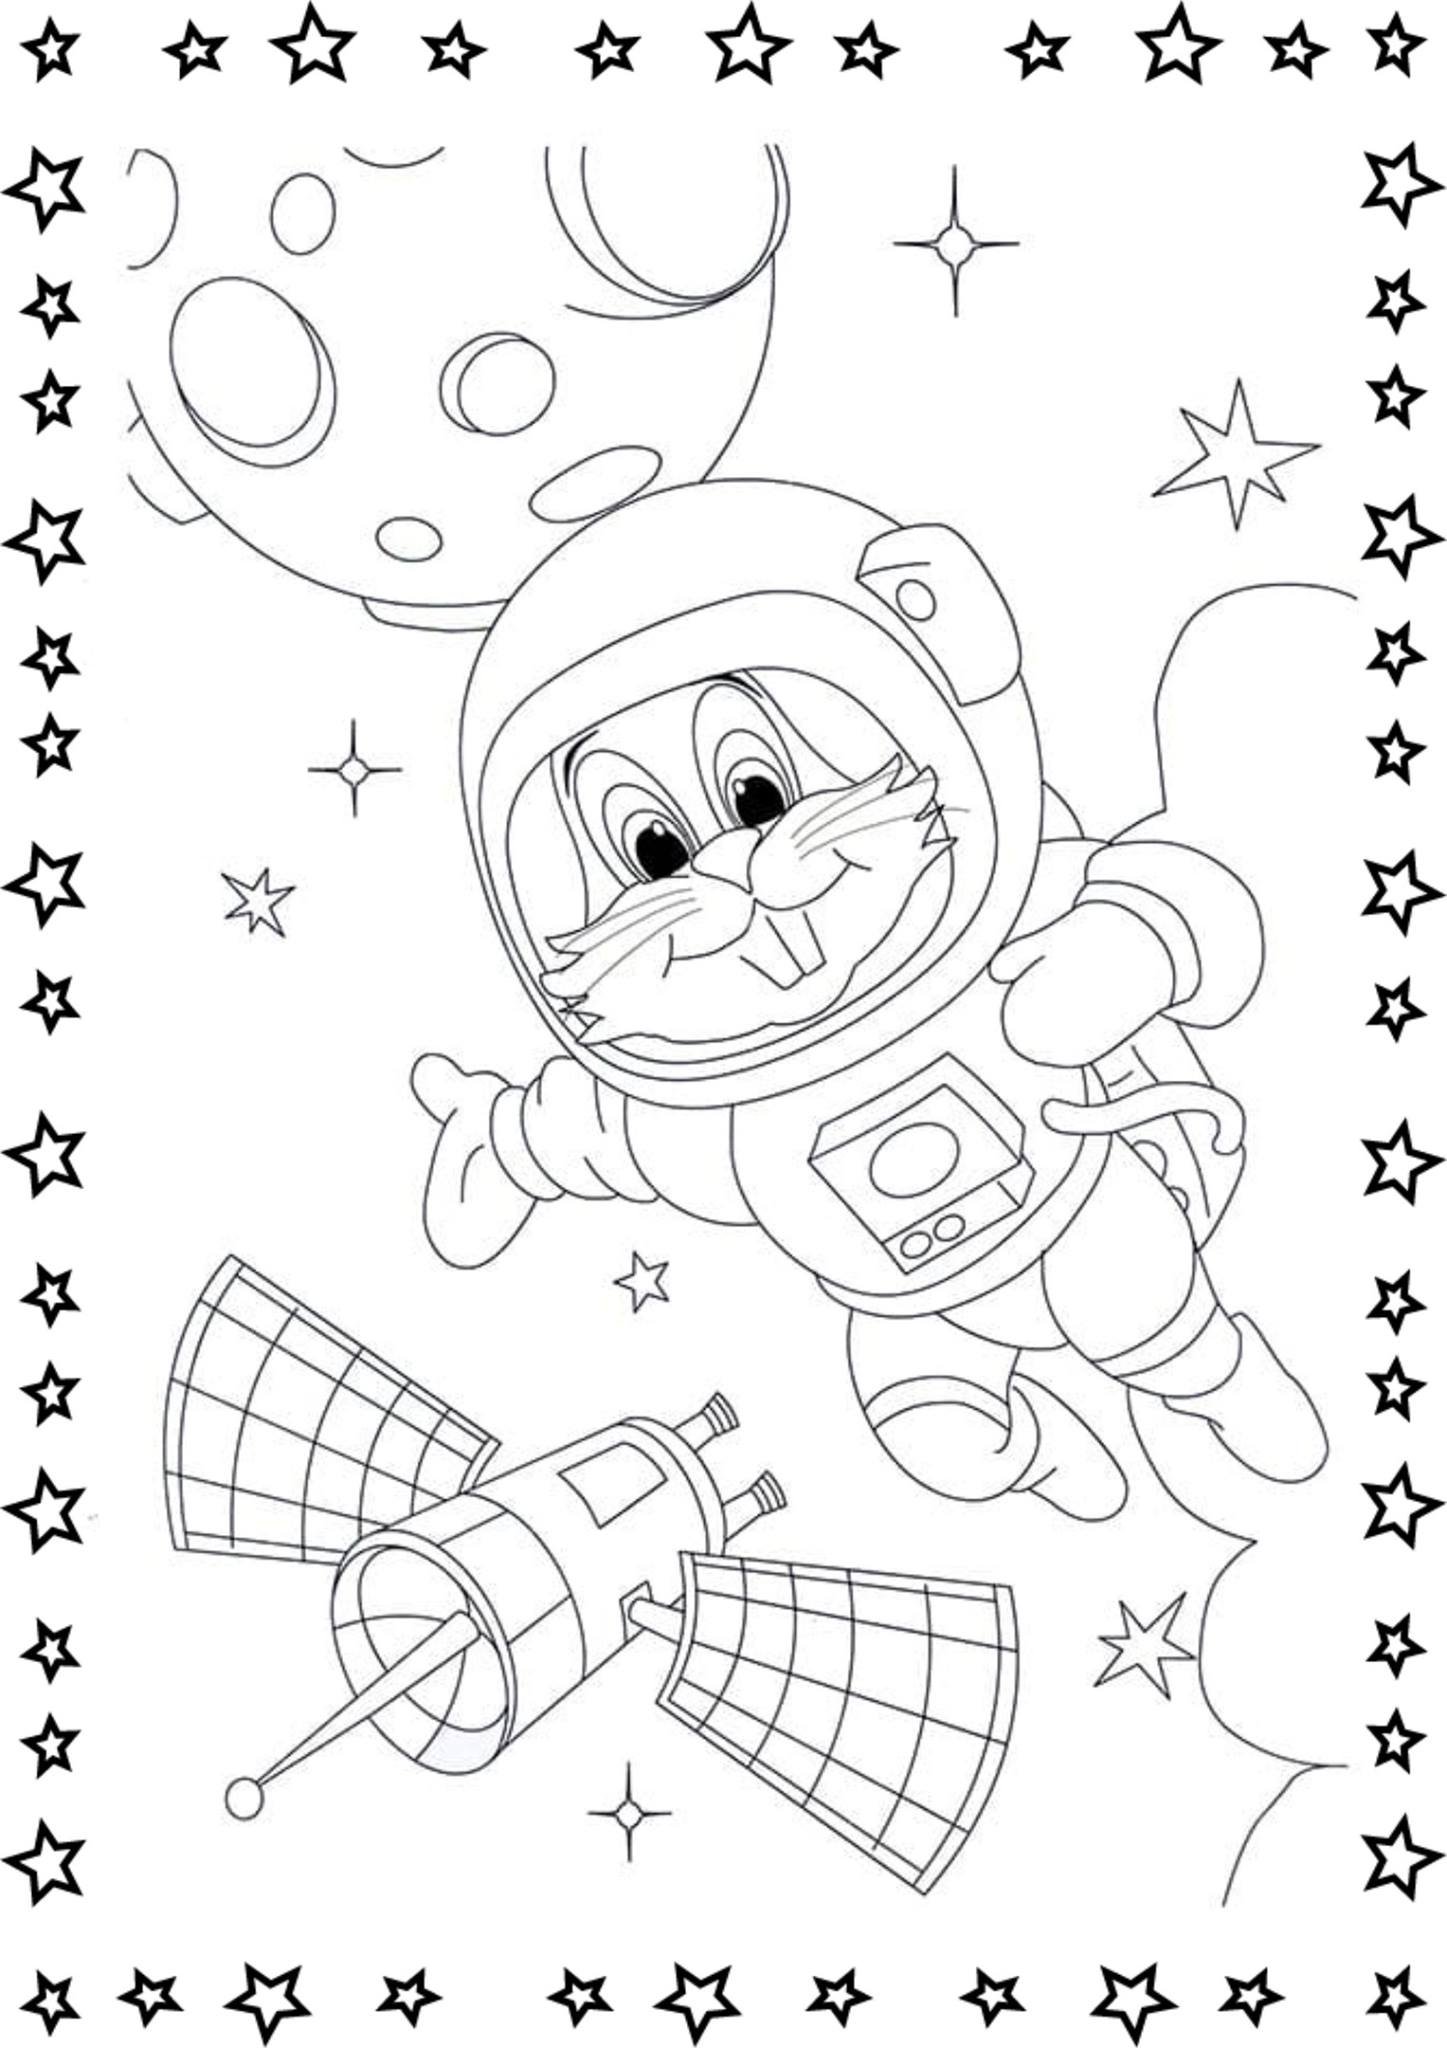 Детские раскраски ко дню космонавтики. Космос раскраска для детей. Раскраска. В космосе. Раскраска космонавтика. Раскраска день космонавтики для детей.